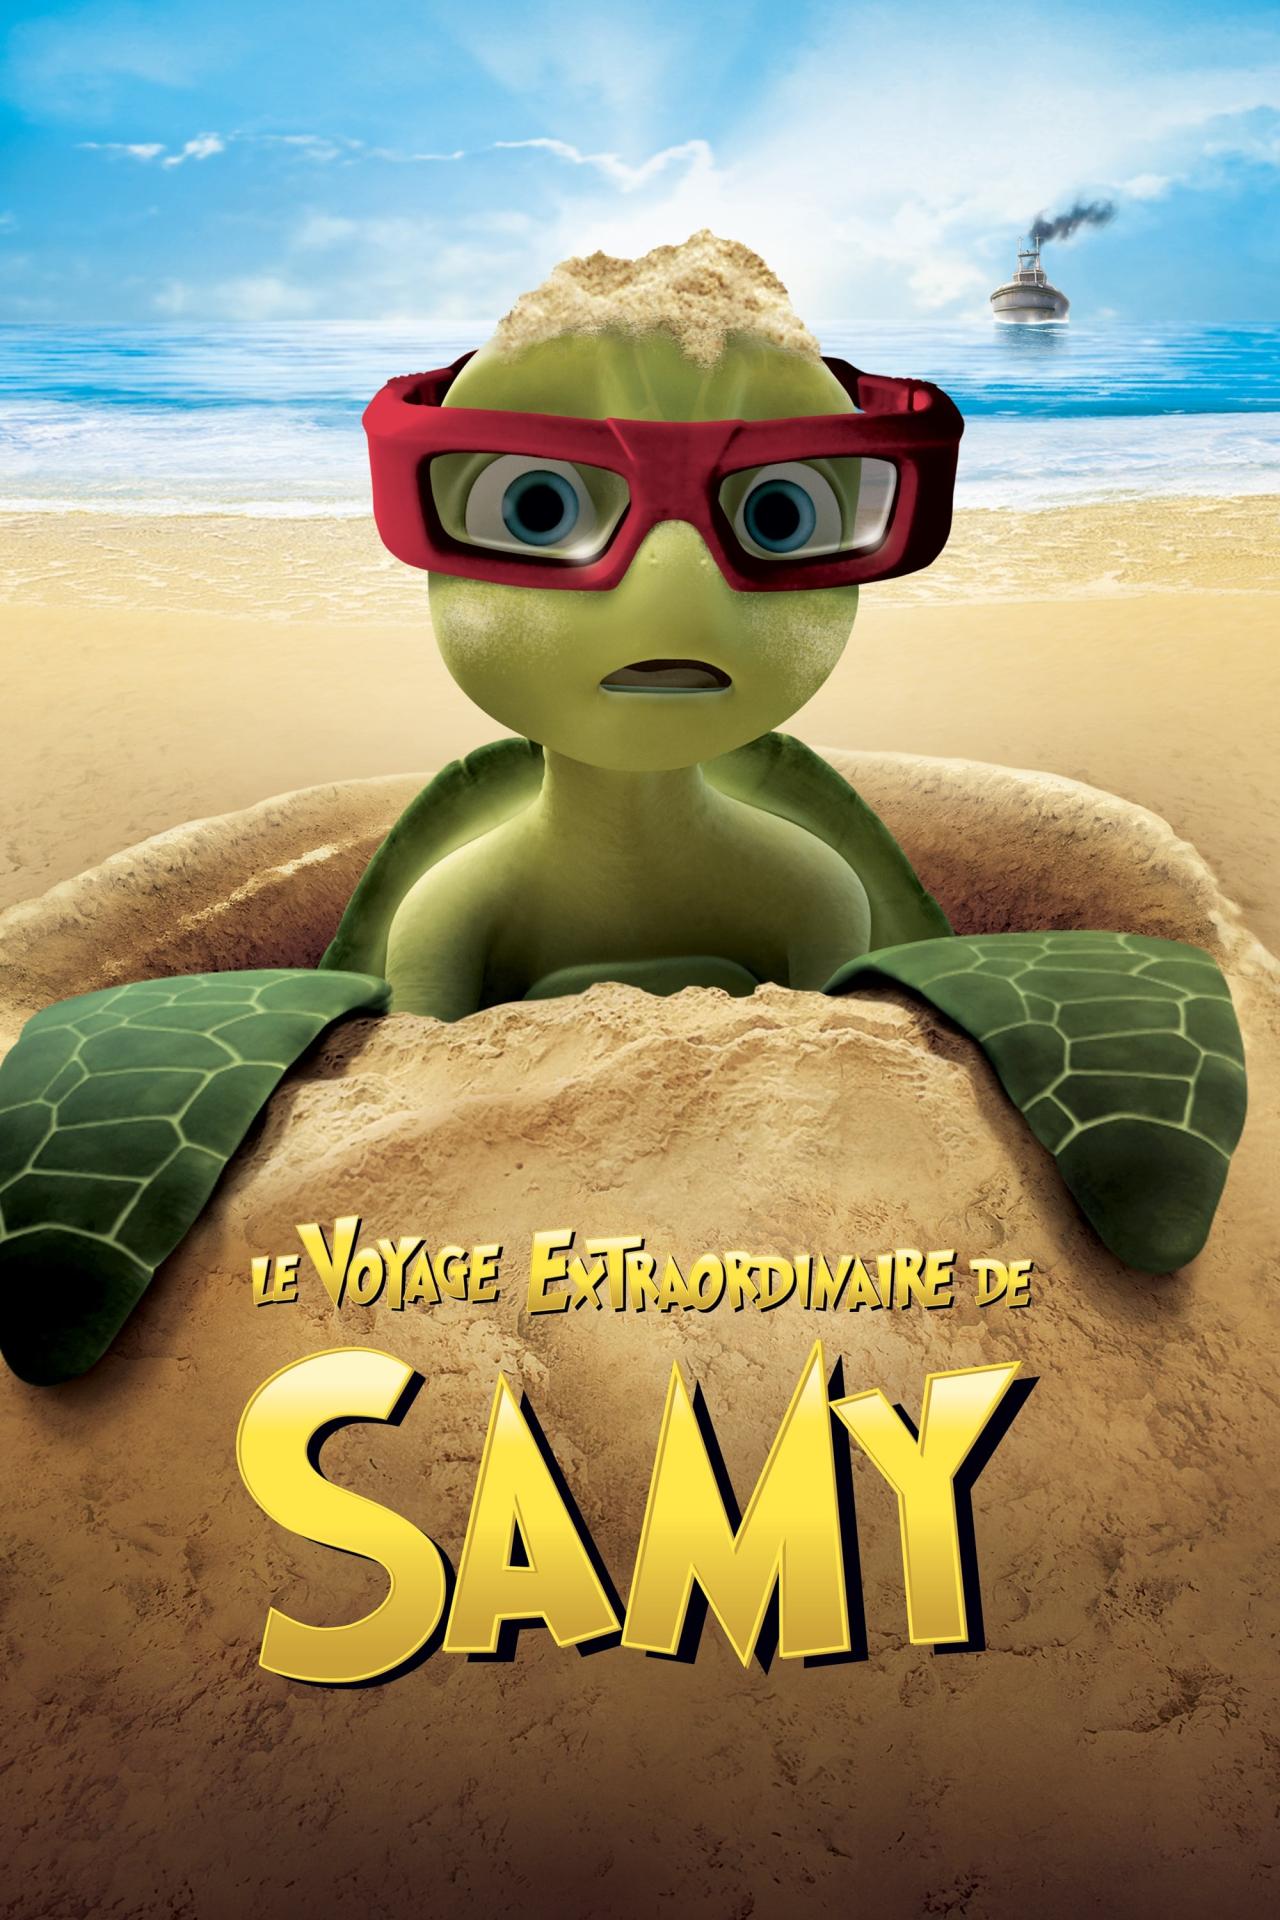 Le voyage extraordinaire de Samy est-il disponible sur Netflix ou autre ?